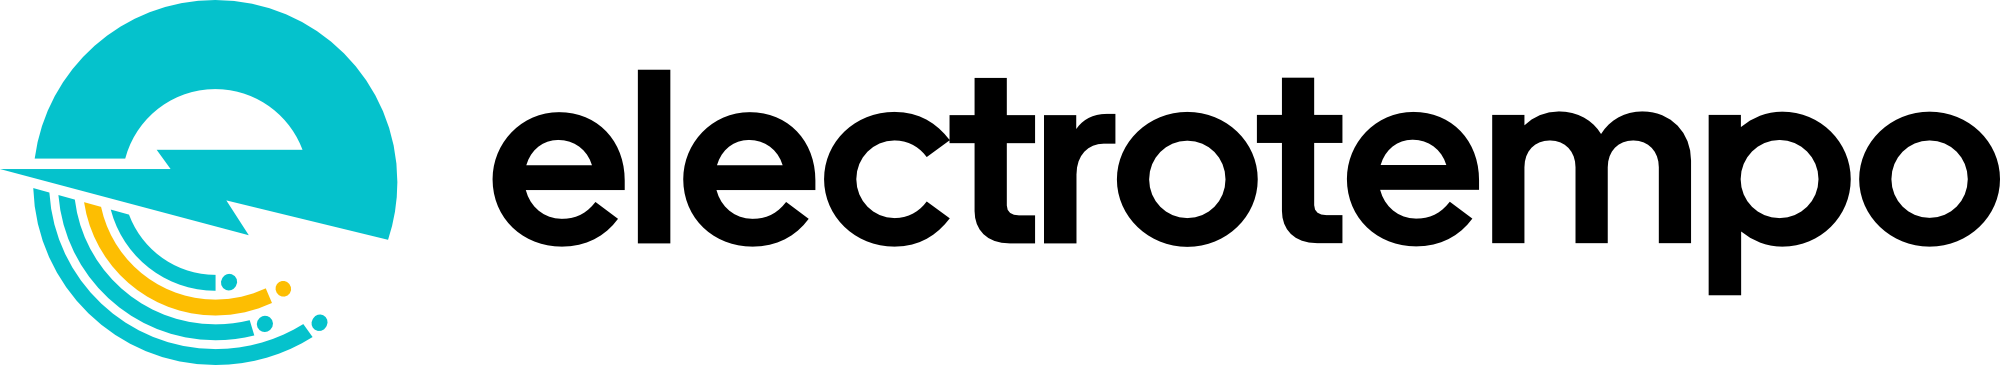 ElectroTempo Logo